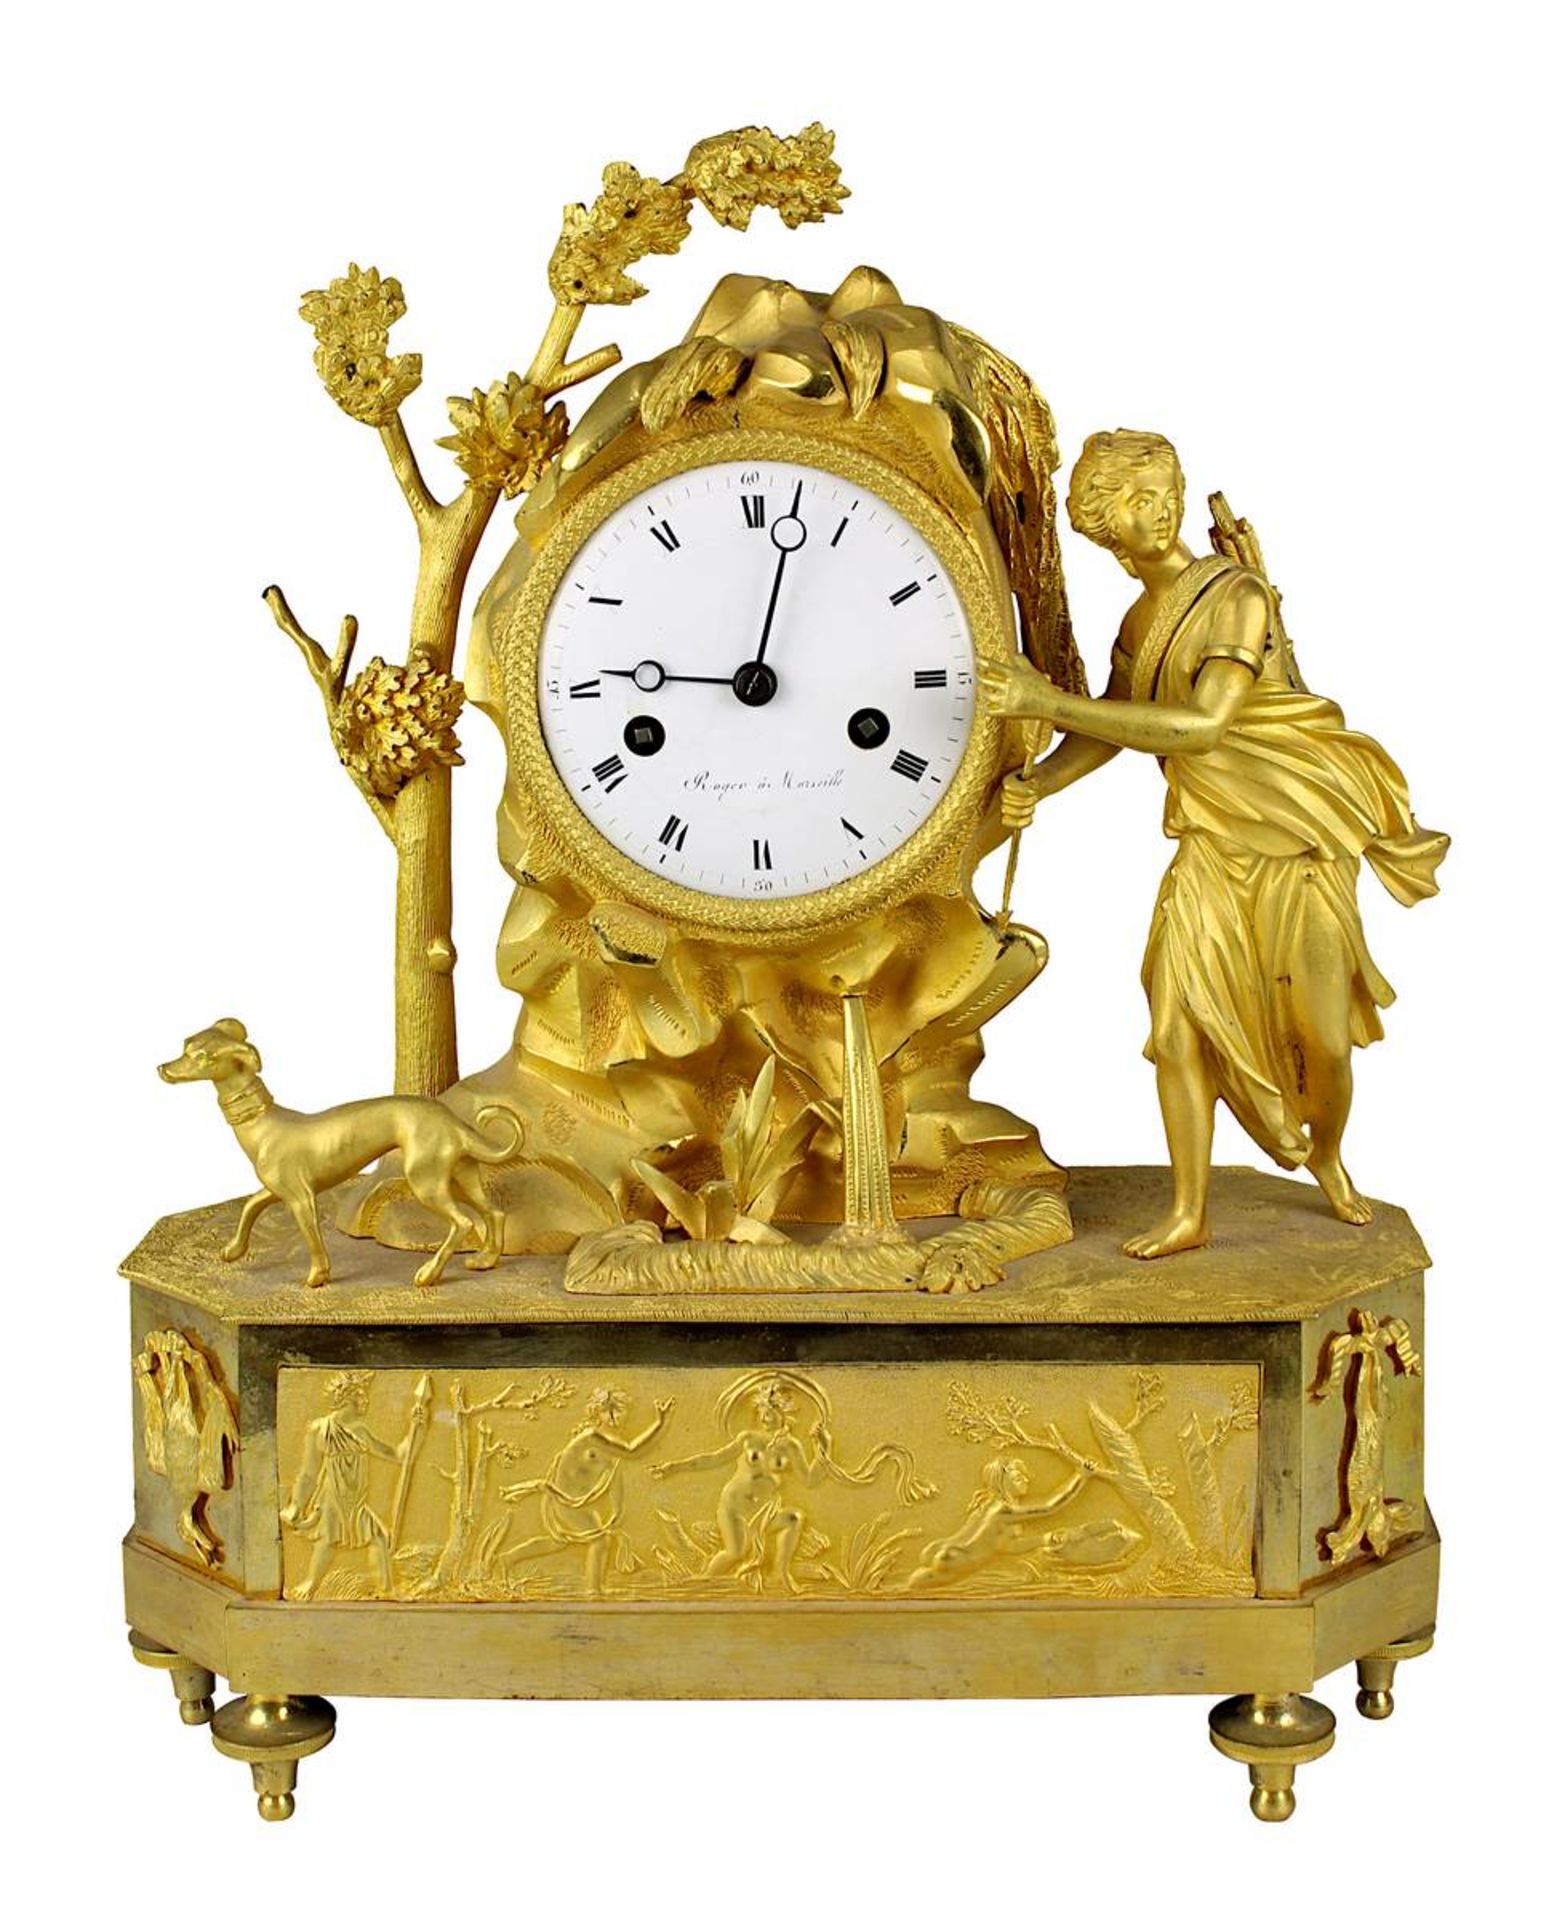 Empire-Bronzeuhr vergoldet, Diana am Brunnen, Frankreich um 1810, französisches Pendulenwerk mit Fad